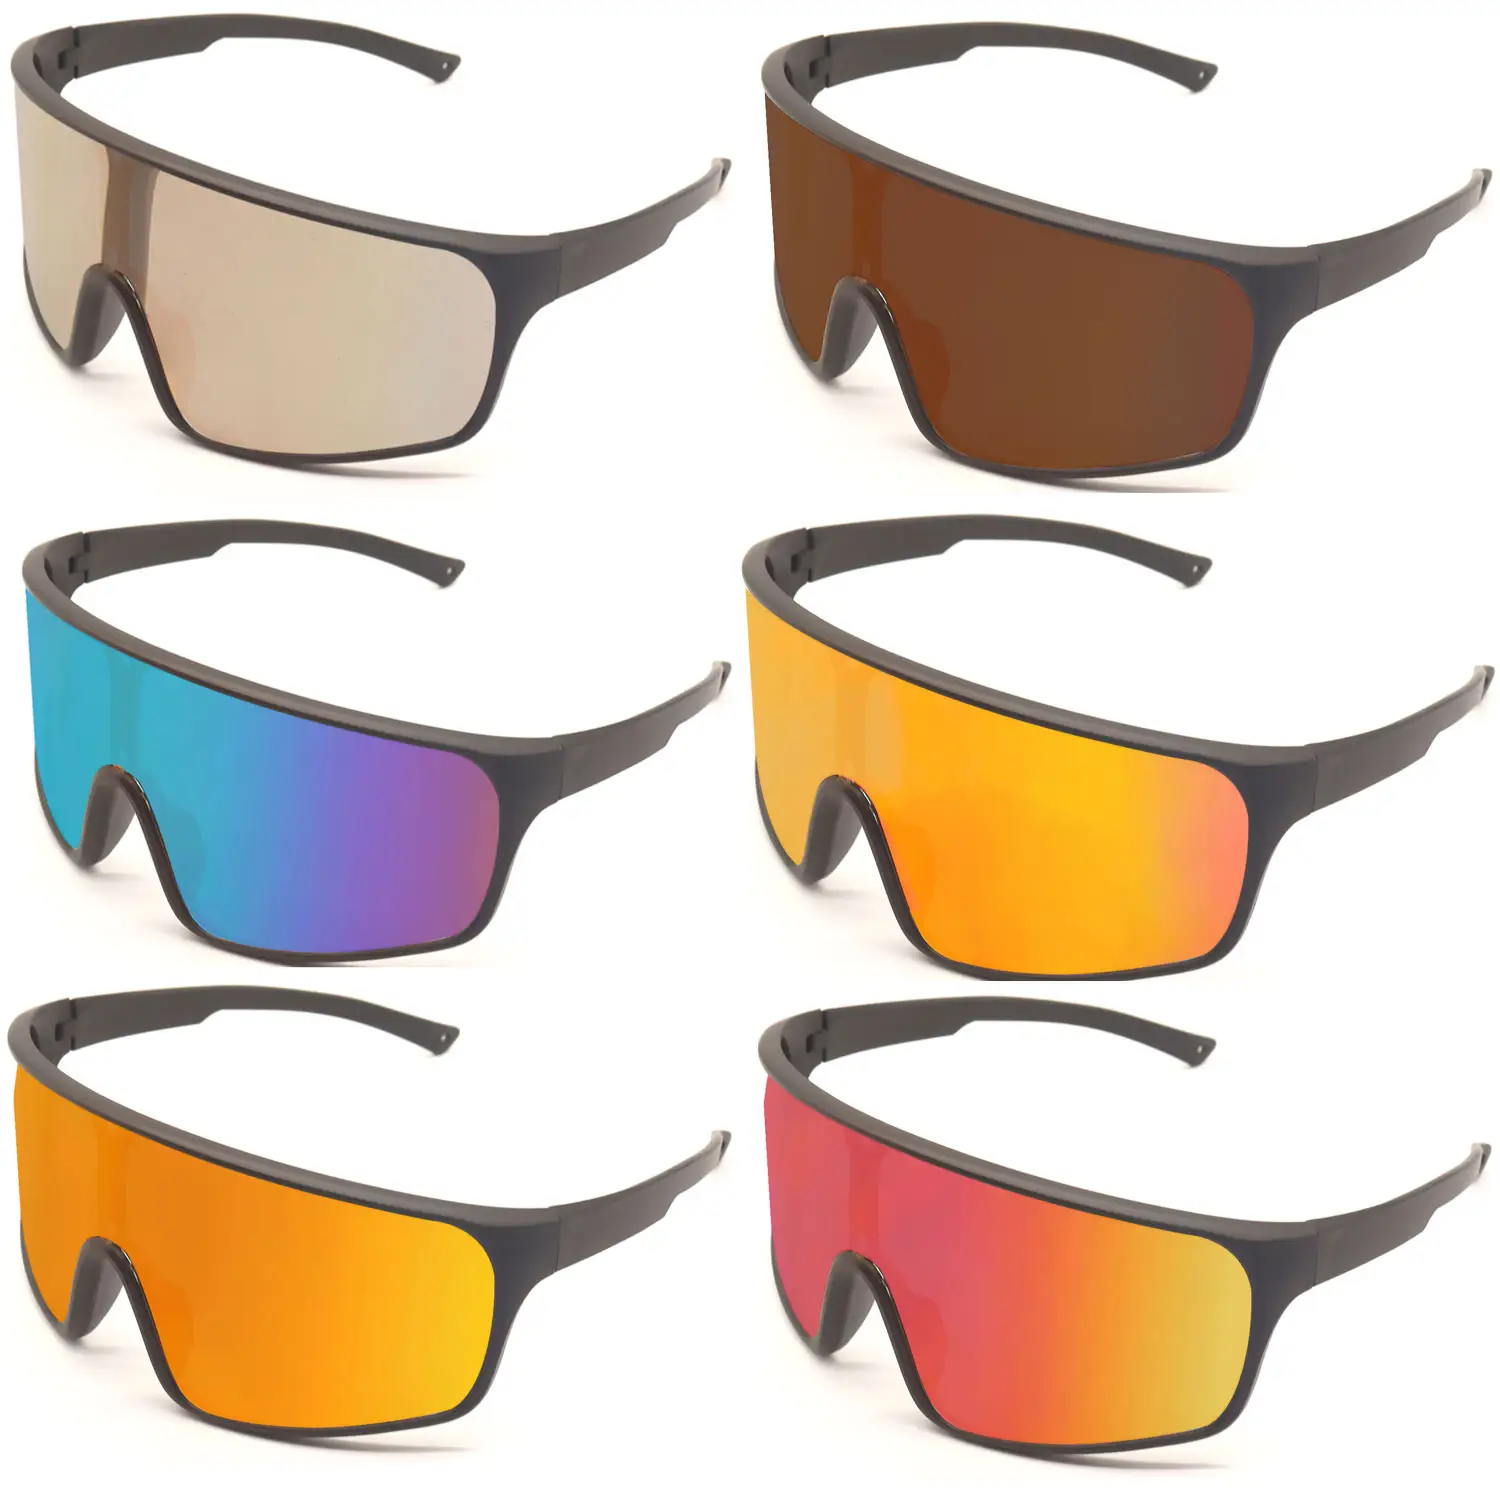 Óculos de proteção UV para ciclismo, óculos polarizados para bicicleta esportiva ao ar livre, óculos fotocromáticos para ciclismo, óculos de ciclismo de grandes dimensões 100%